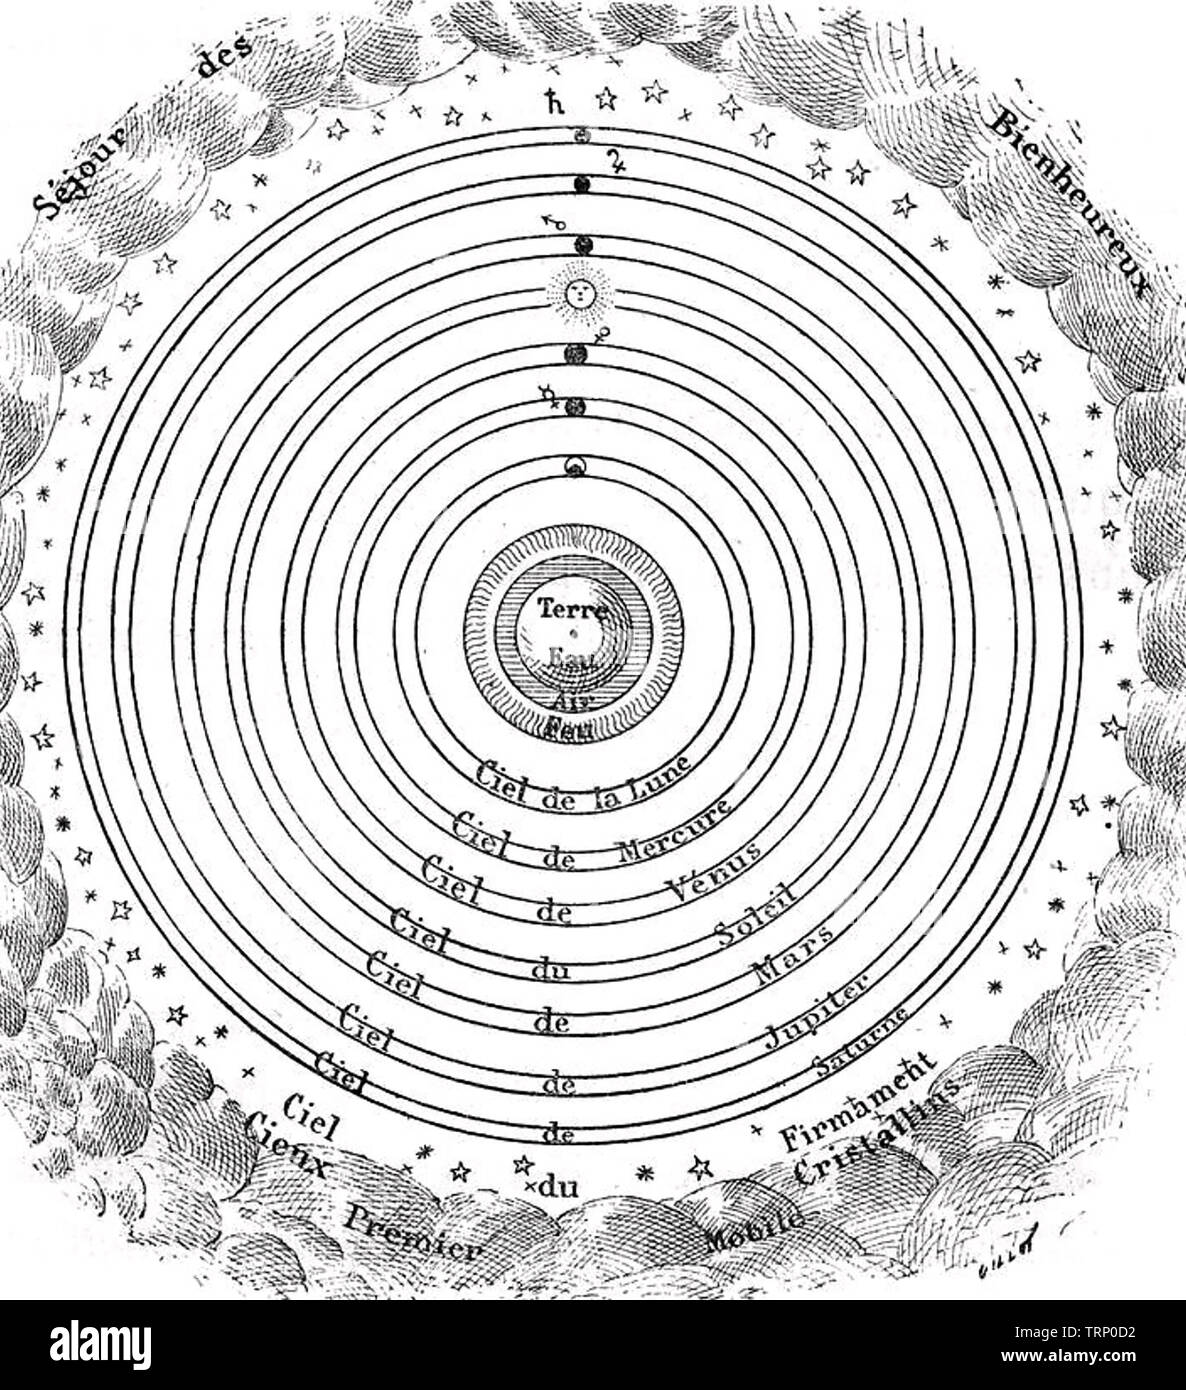 Tolomeo (c 100-c 170 AD) matematico greco-romana e astronomo. Schema francese della sua idea geocentrica del sistema solare Foto Stock